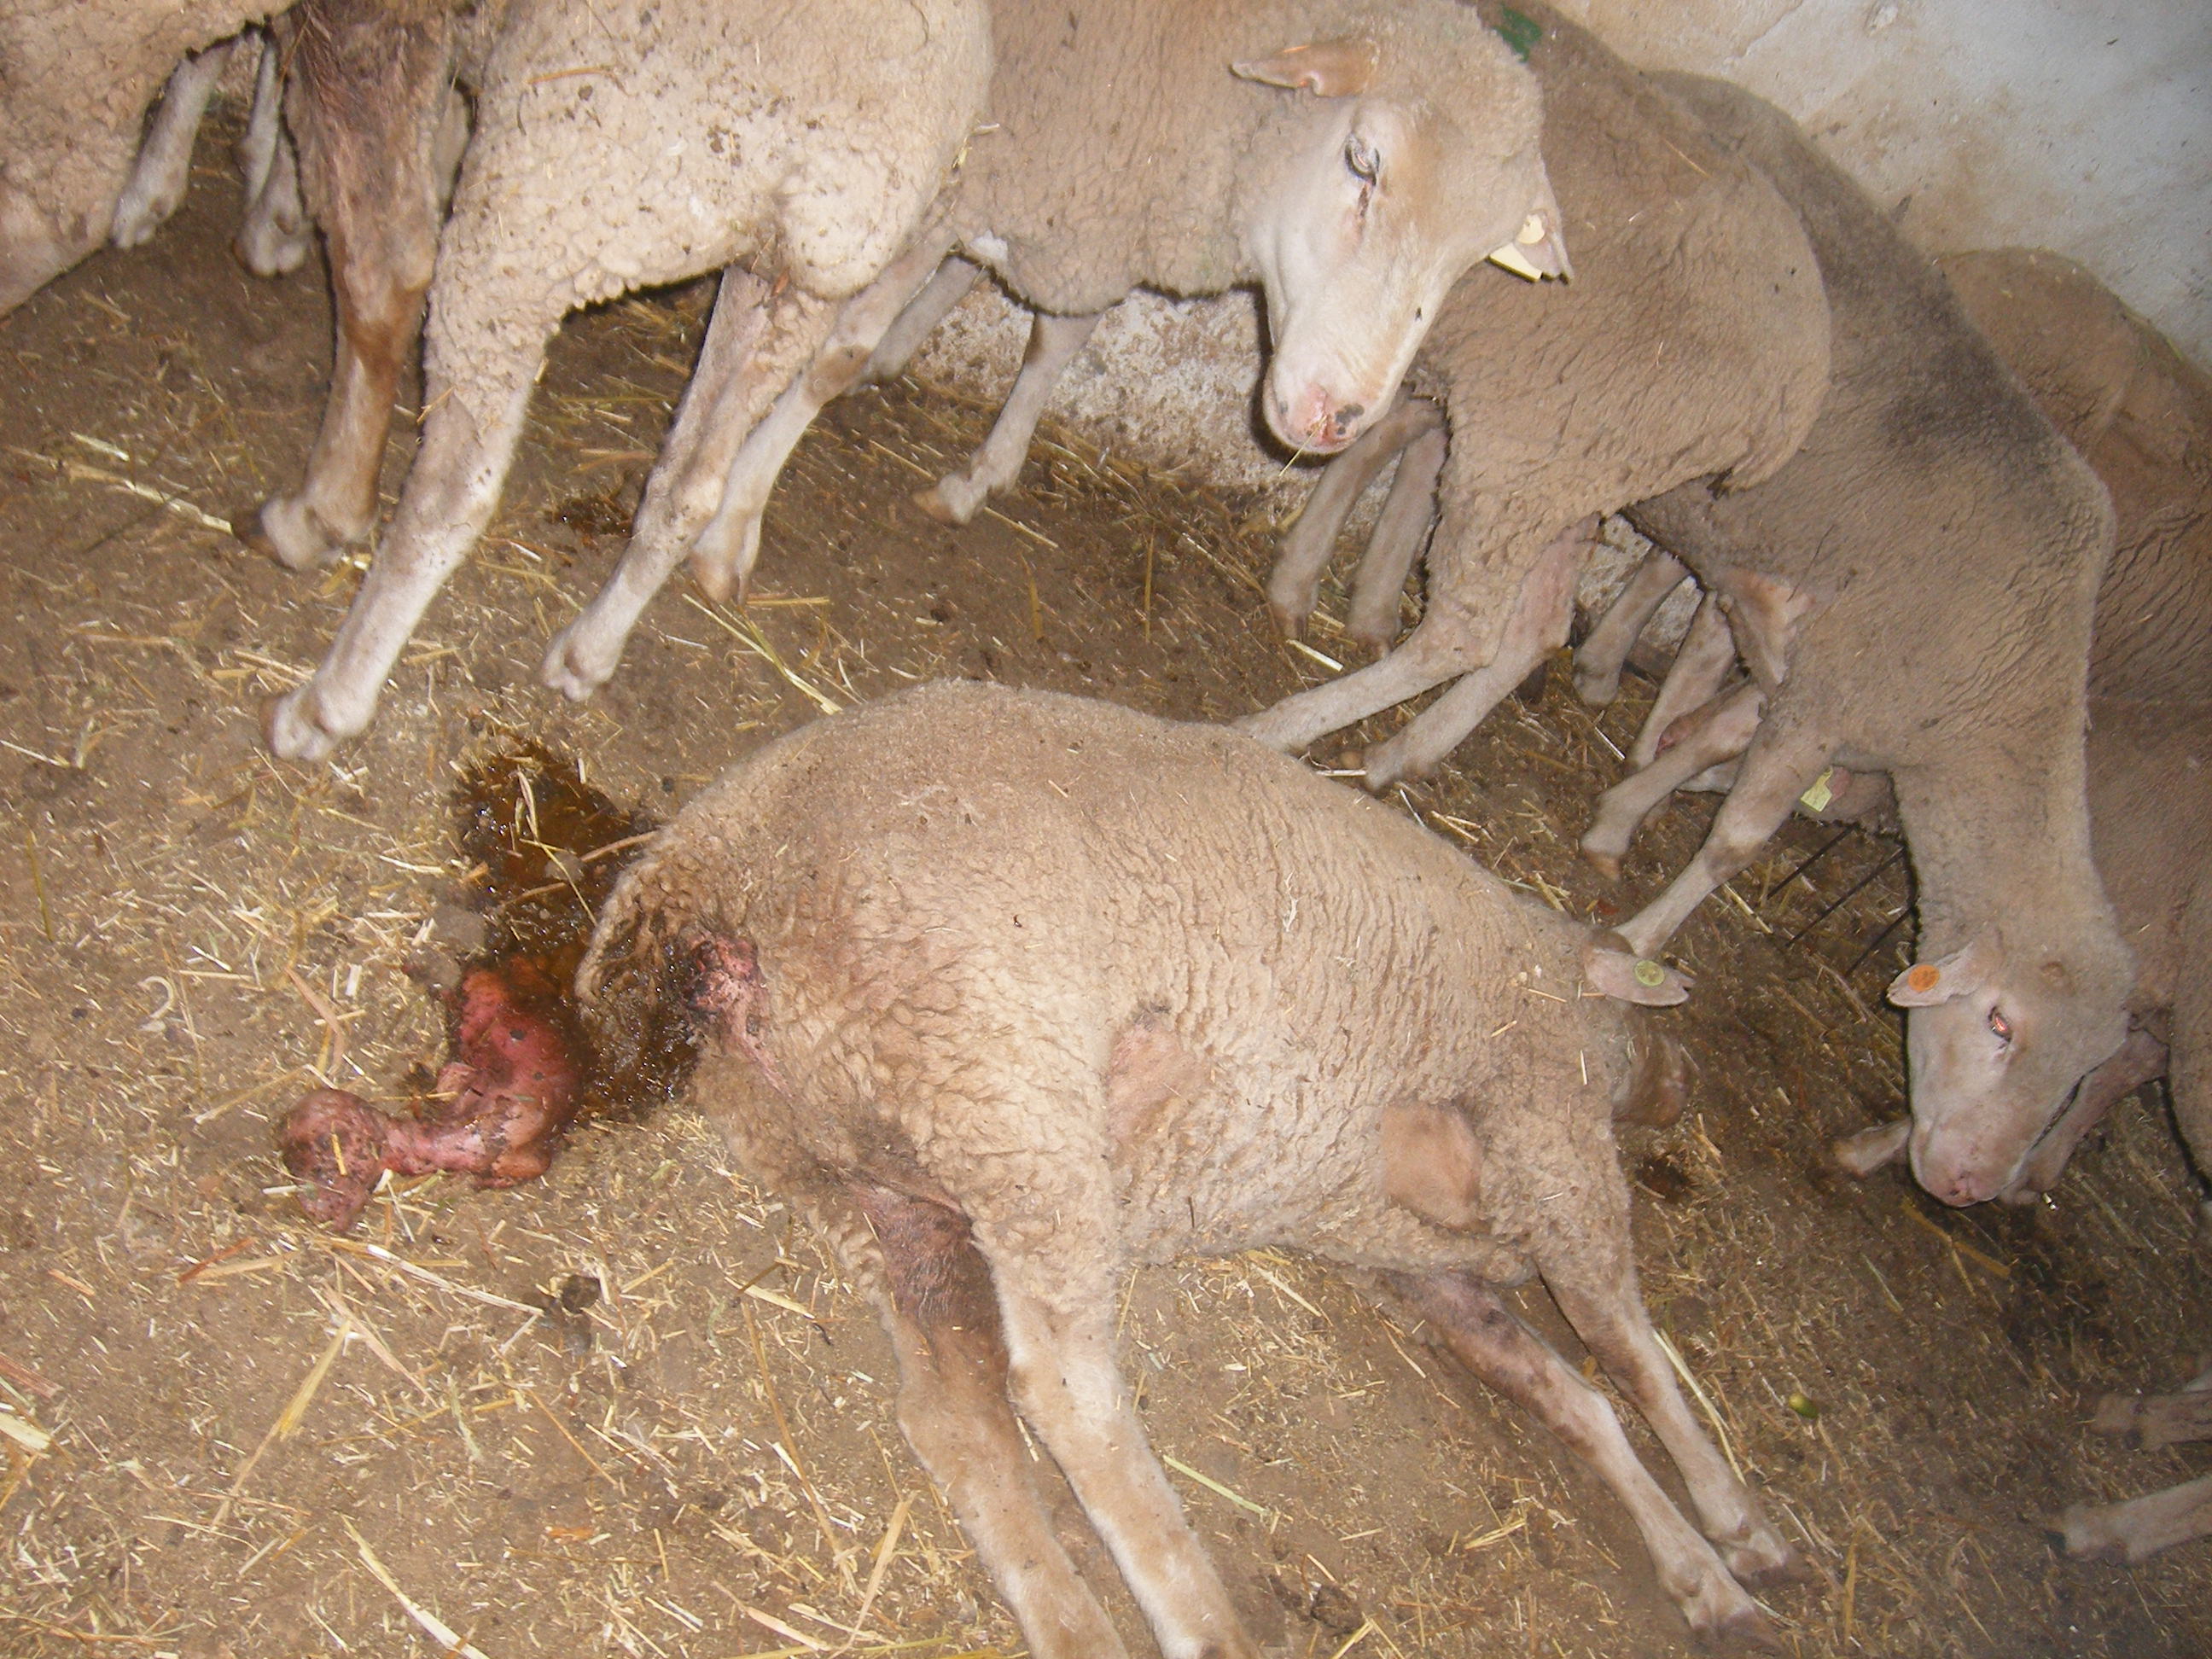 Aborto en ganado ovino